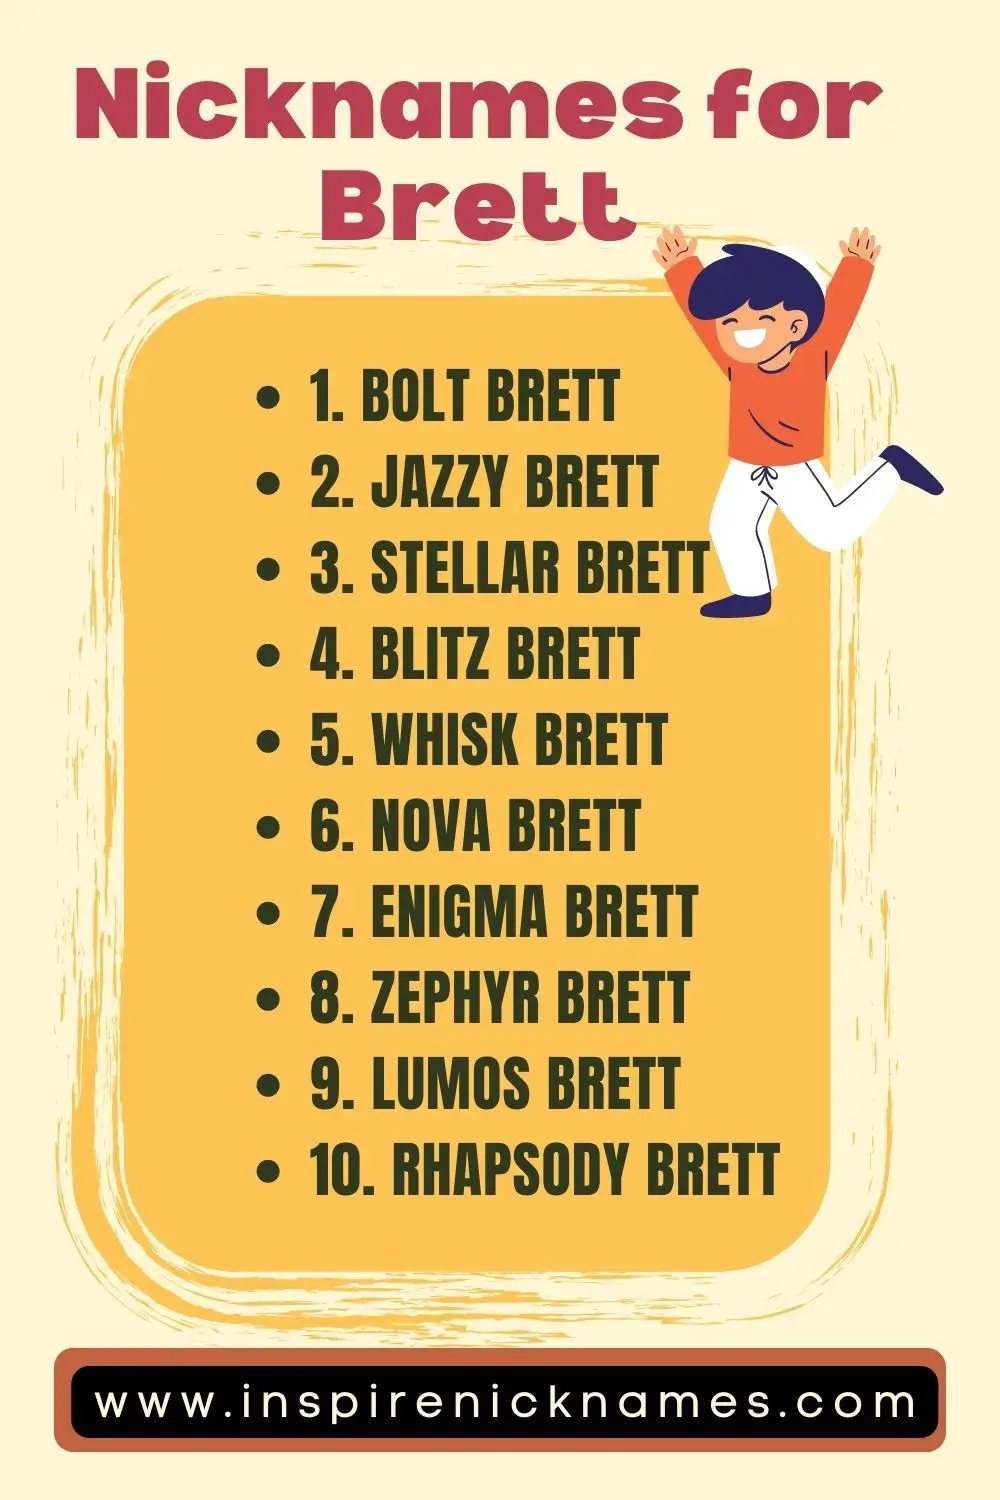 nicknames for Brett list ideas